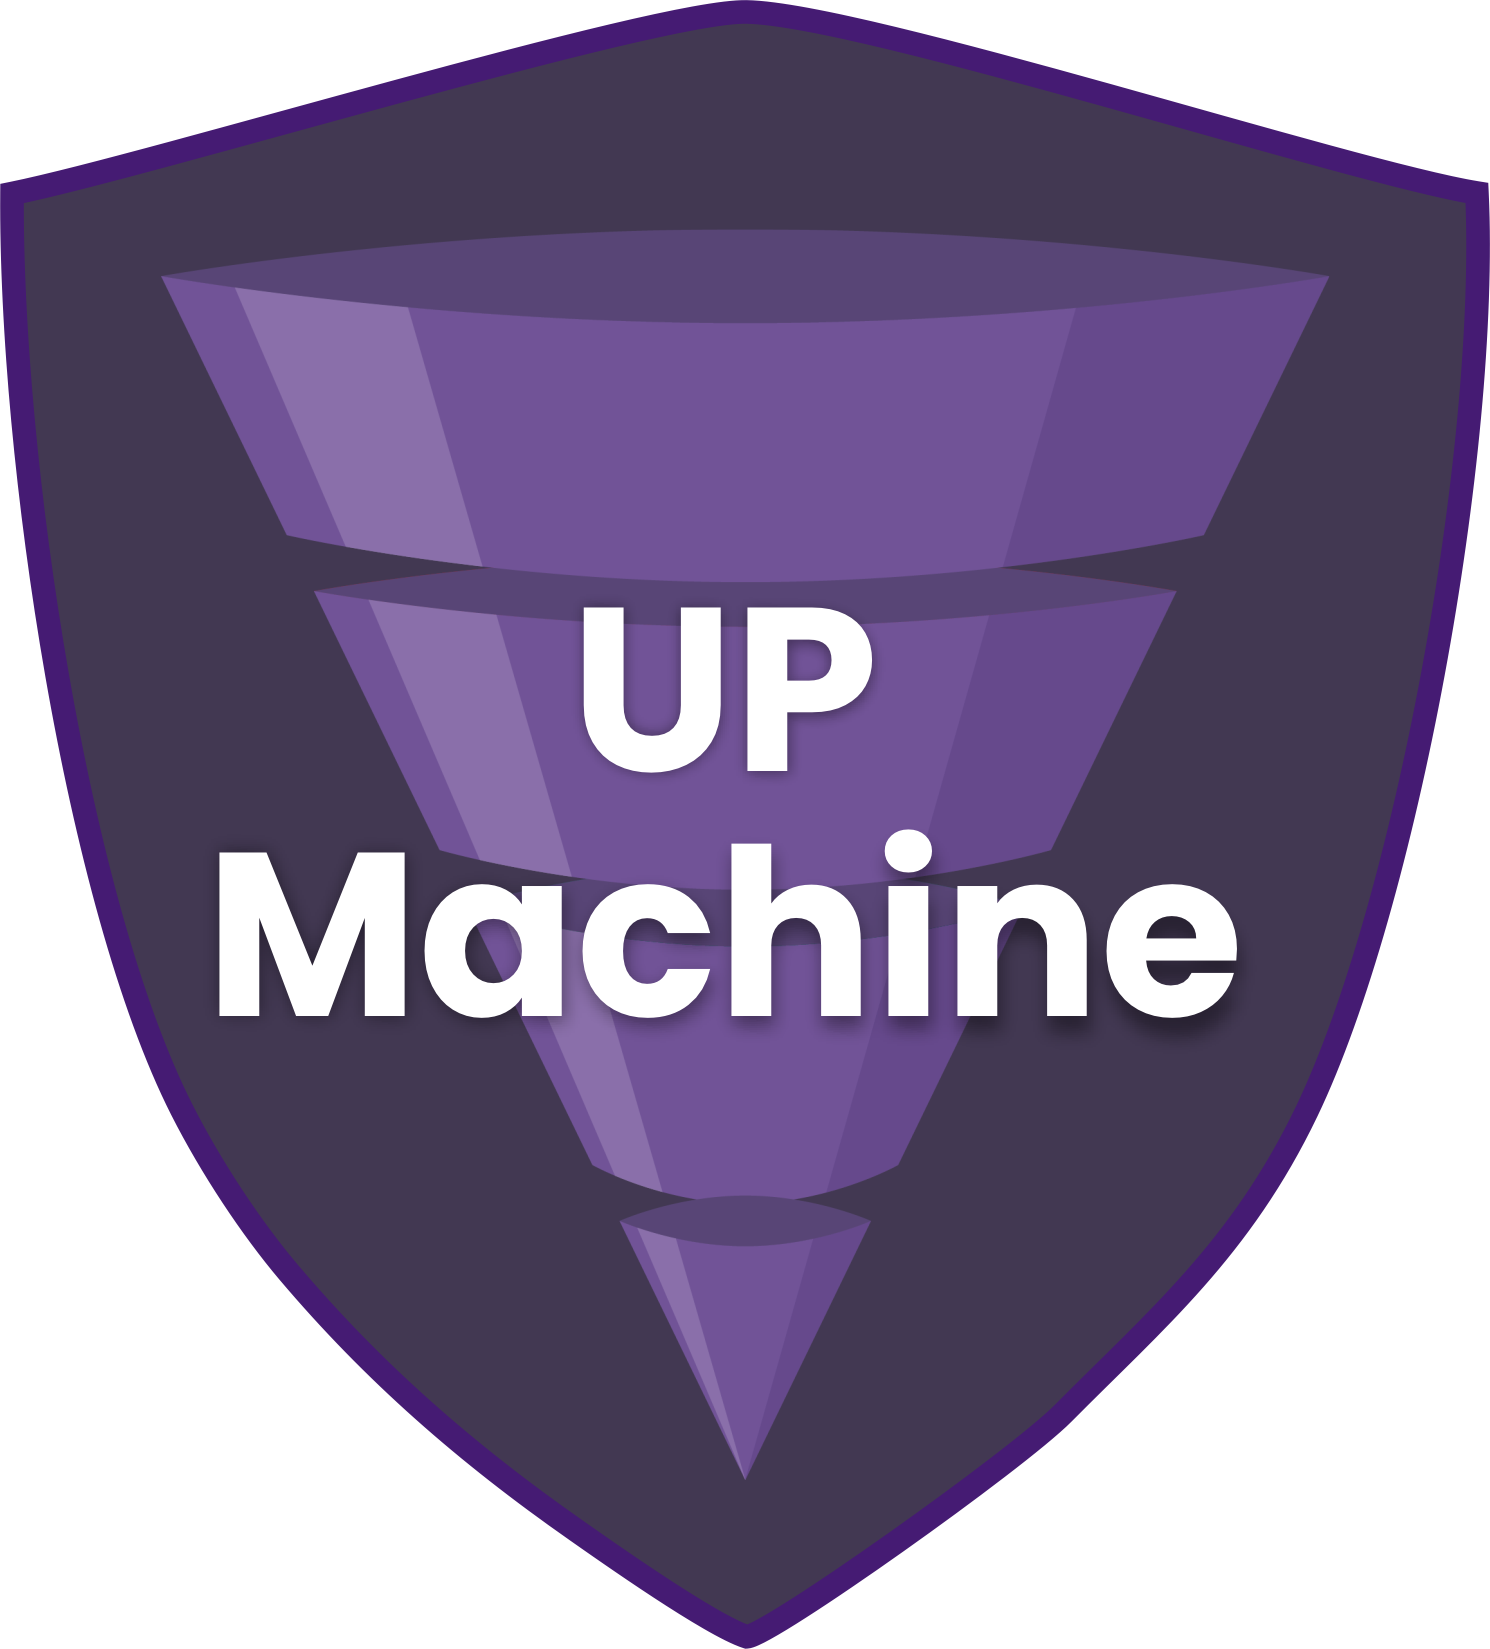 UP Machine